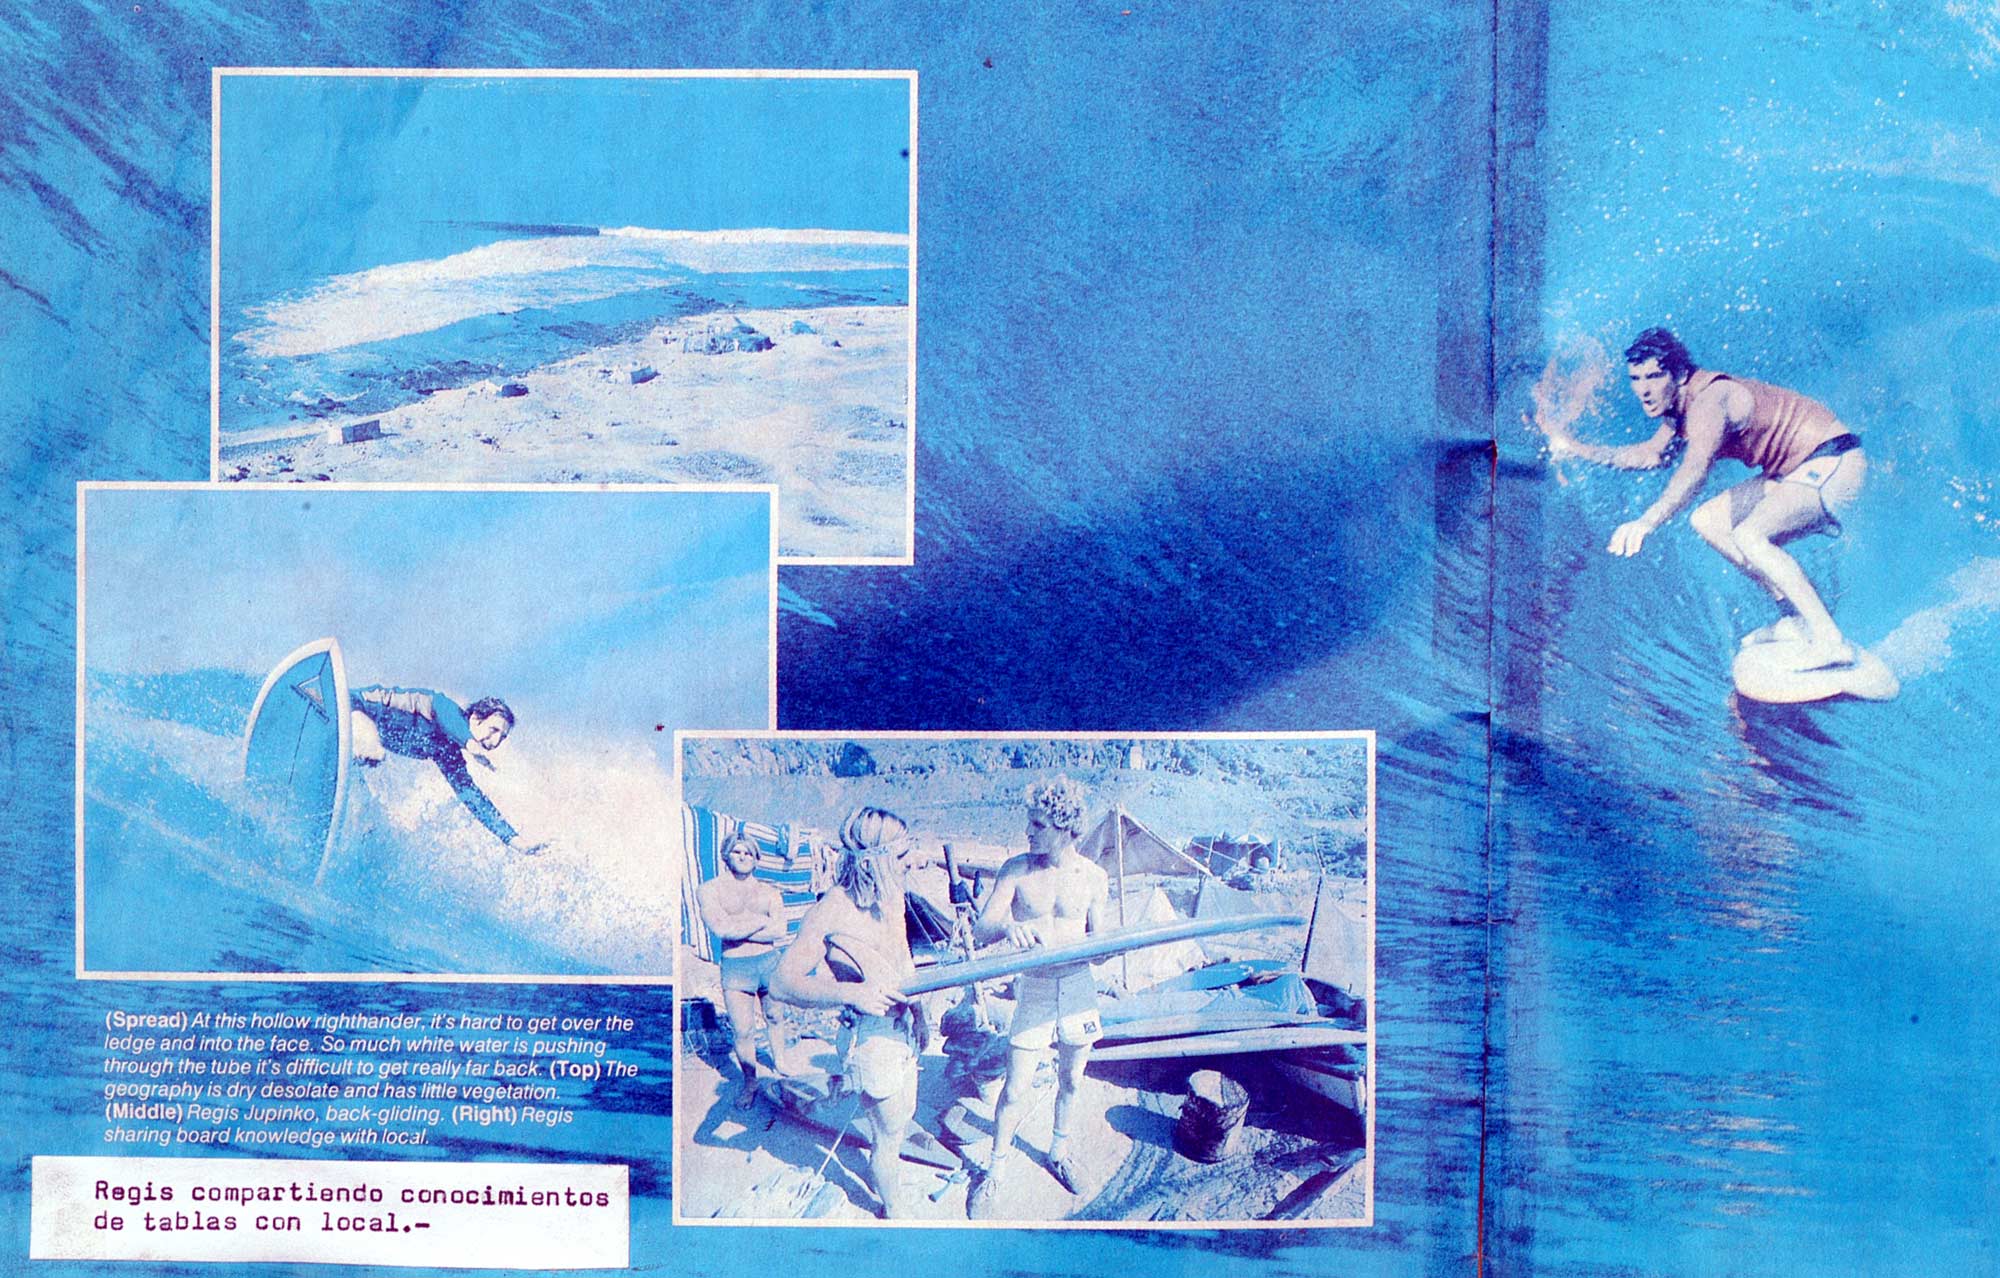 La ola del Confital según la revista Surfing Magazine en el año 1978